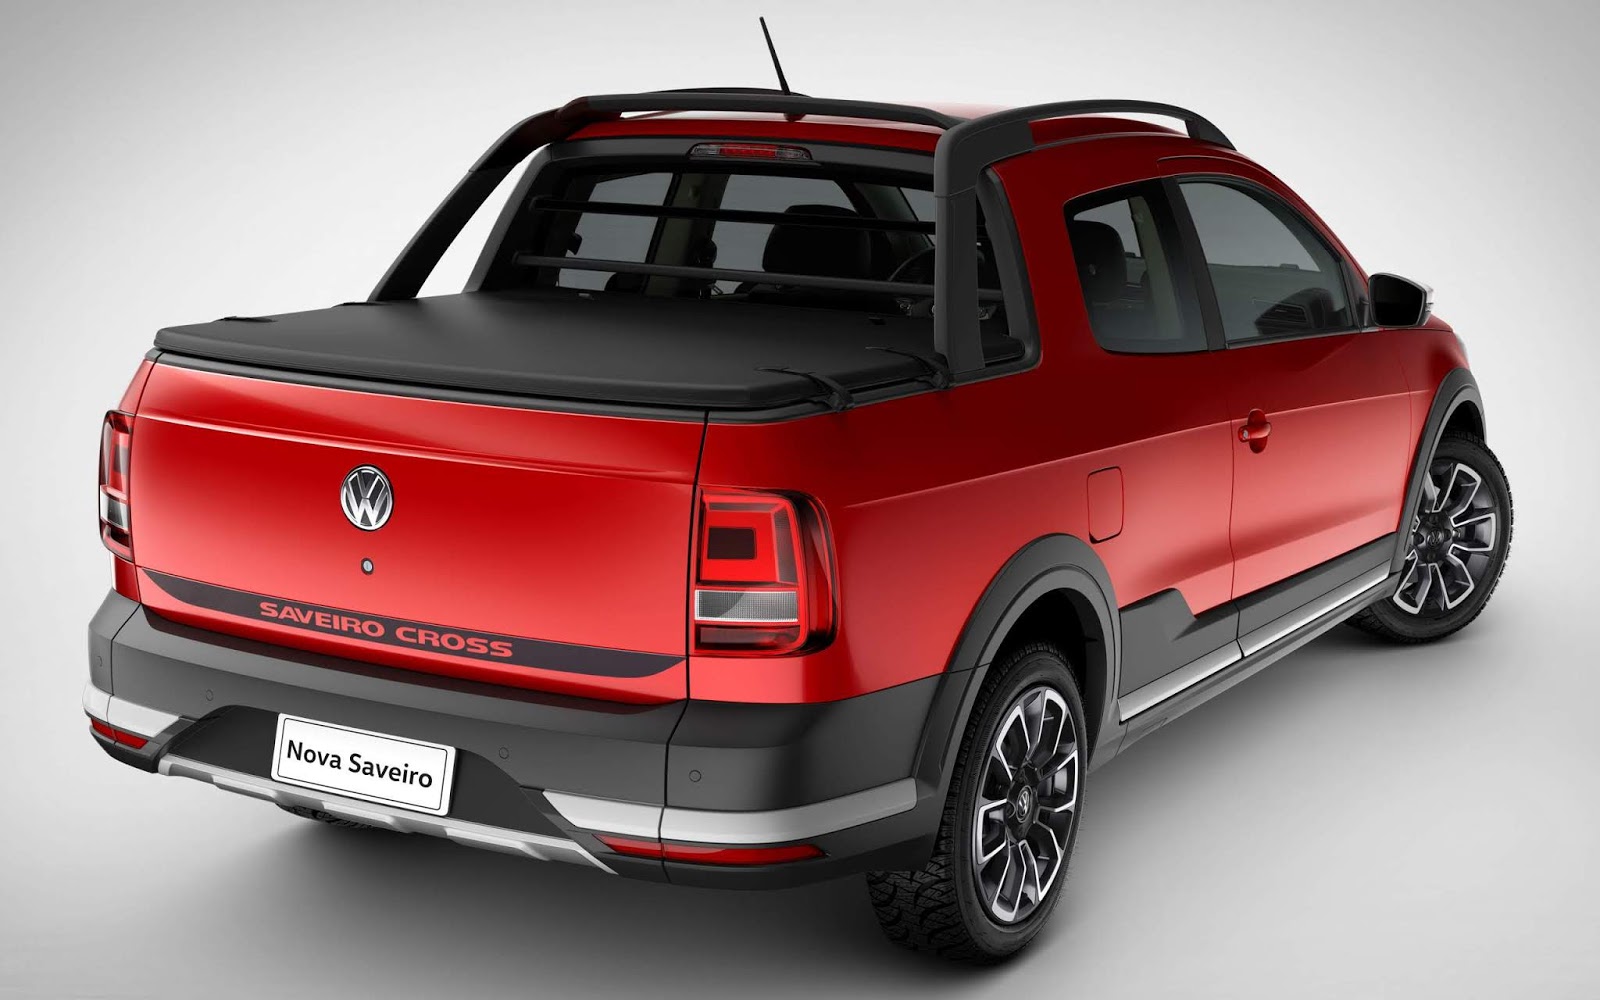 VW Saveiro Cabine Dupla brasileira chega ao Peru - preços